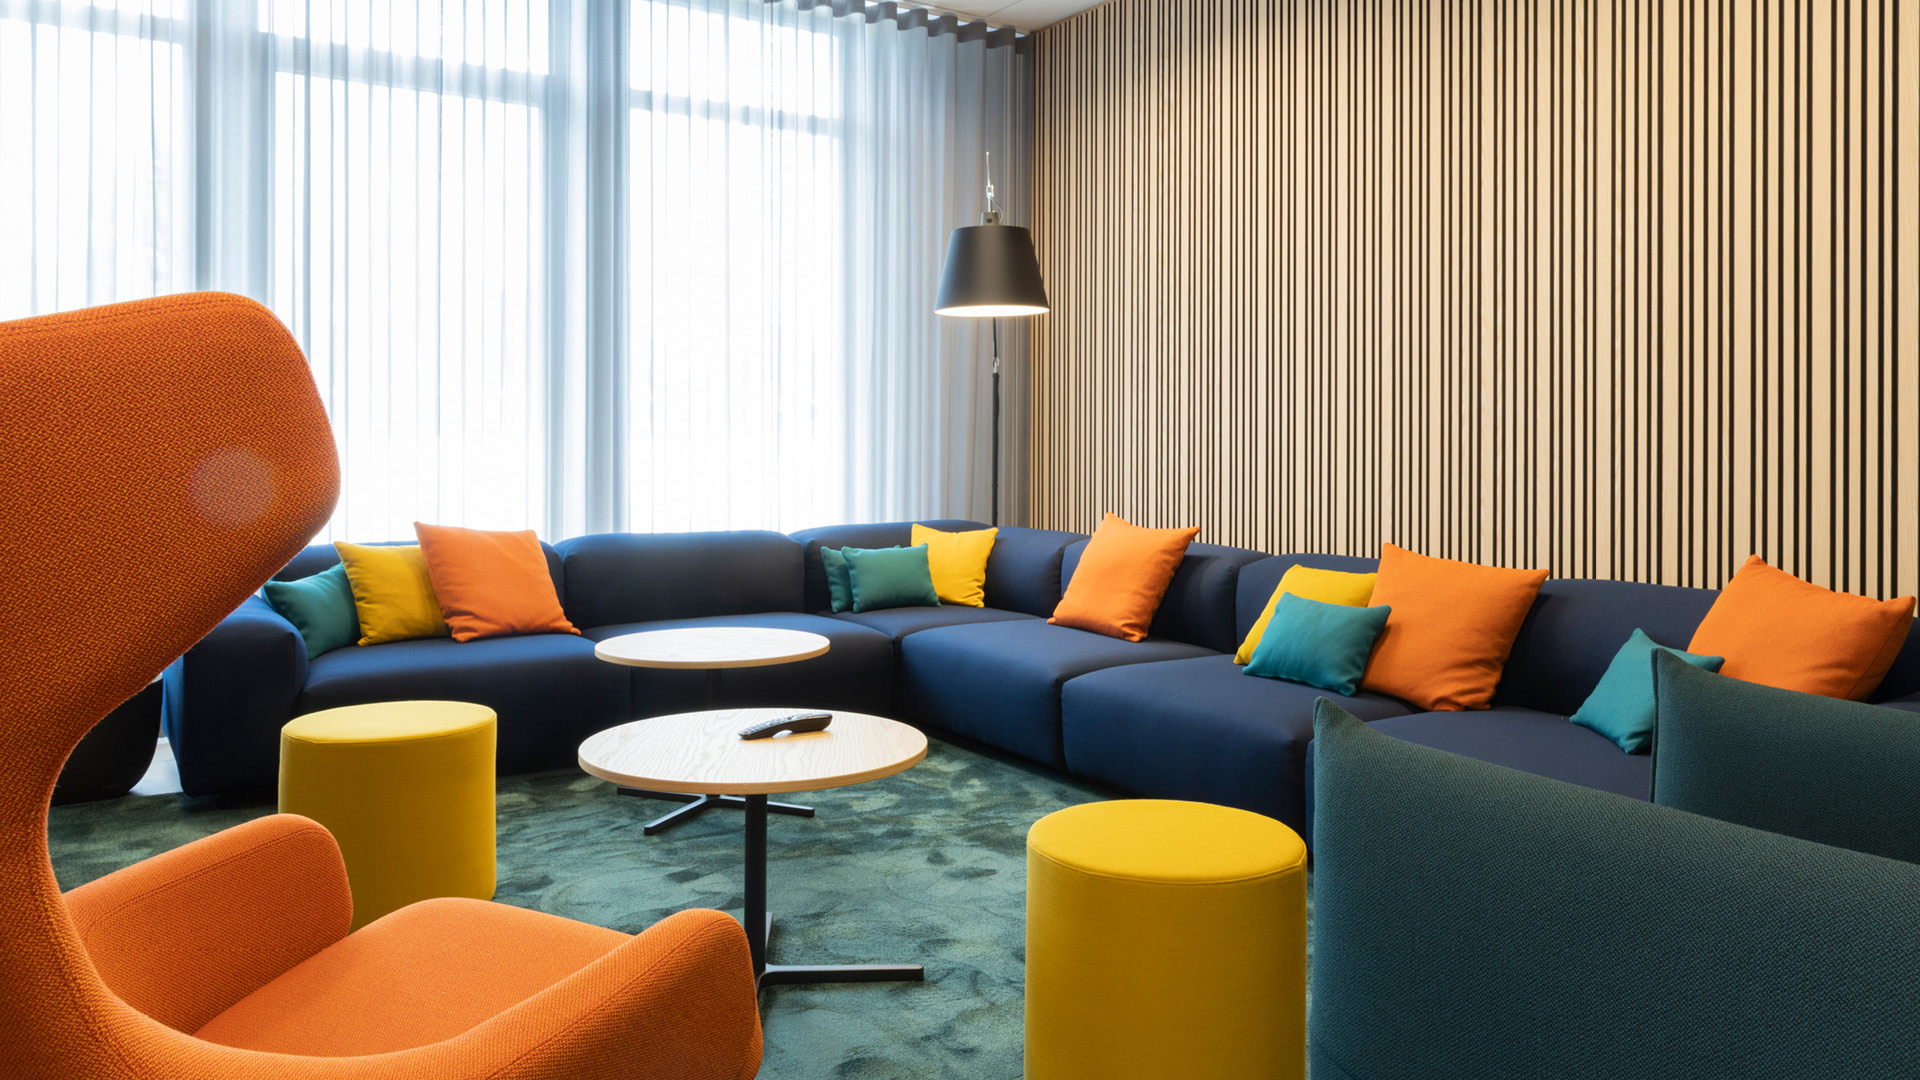 projekt k Referenz Markilux Lounge für Kundengespräche mit Vitra Sofa und Sessel